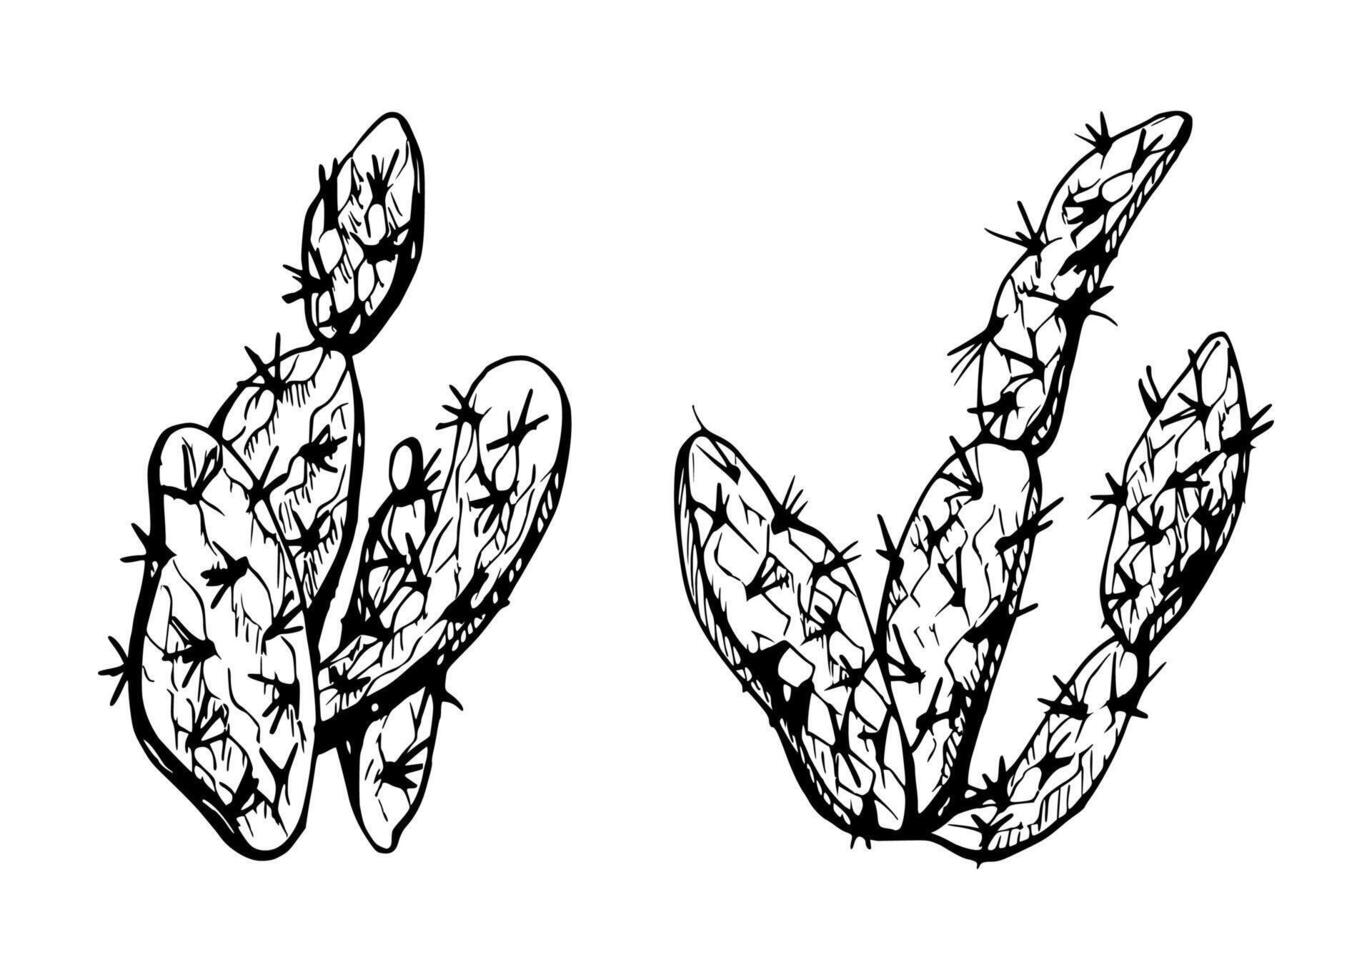 mano dibujado tinta vector ilustración, naturaleza tropical exótico Desierto planta suculento cactus áloe agave hojas. soltero objeto aislado blanco antecedentes. diseño viajar, vacaciones, folleto, imprimir, botánico